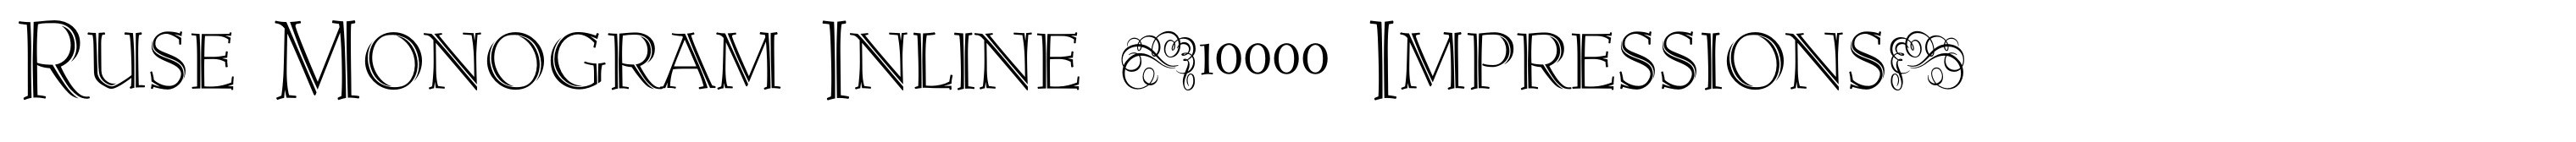 Ruse Monogram Inline (10000 Impressions)